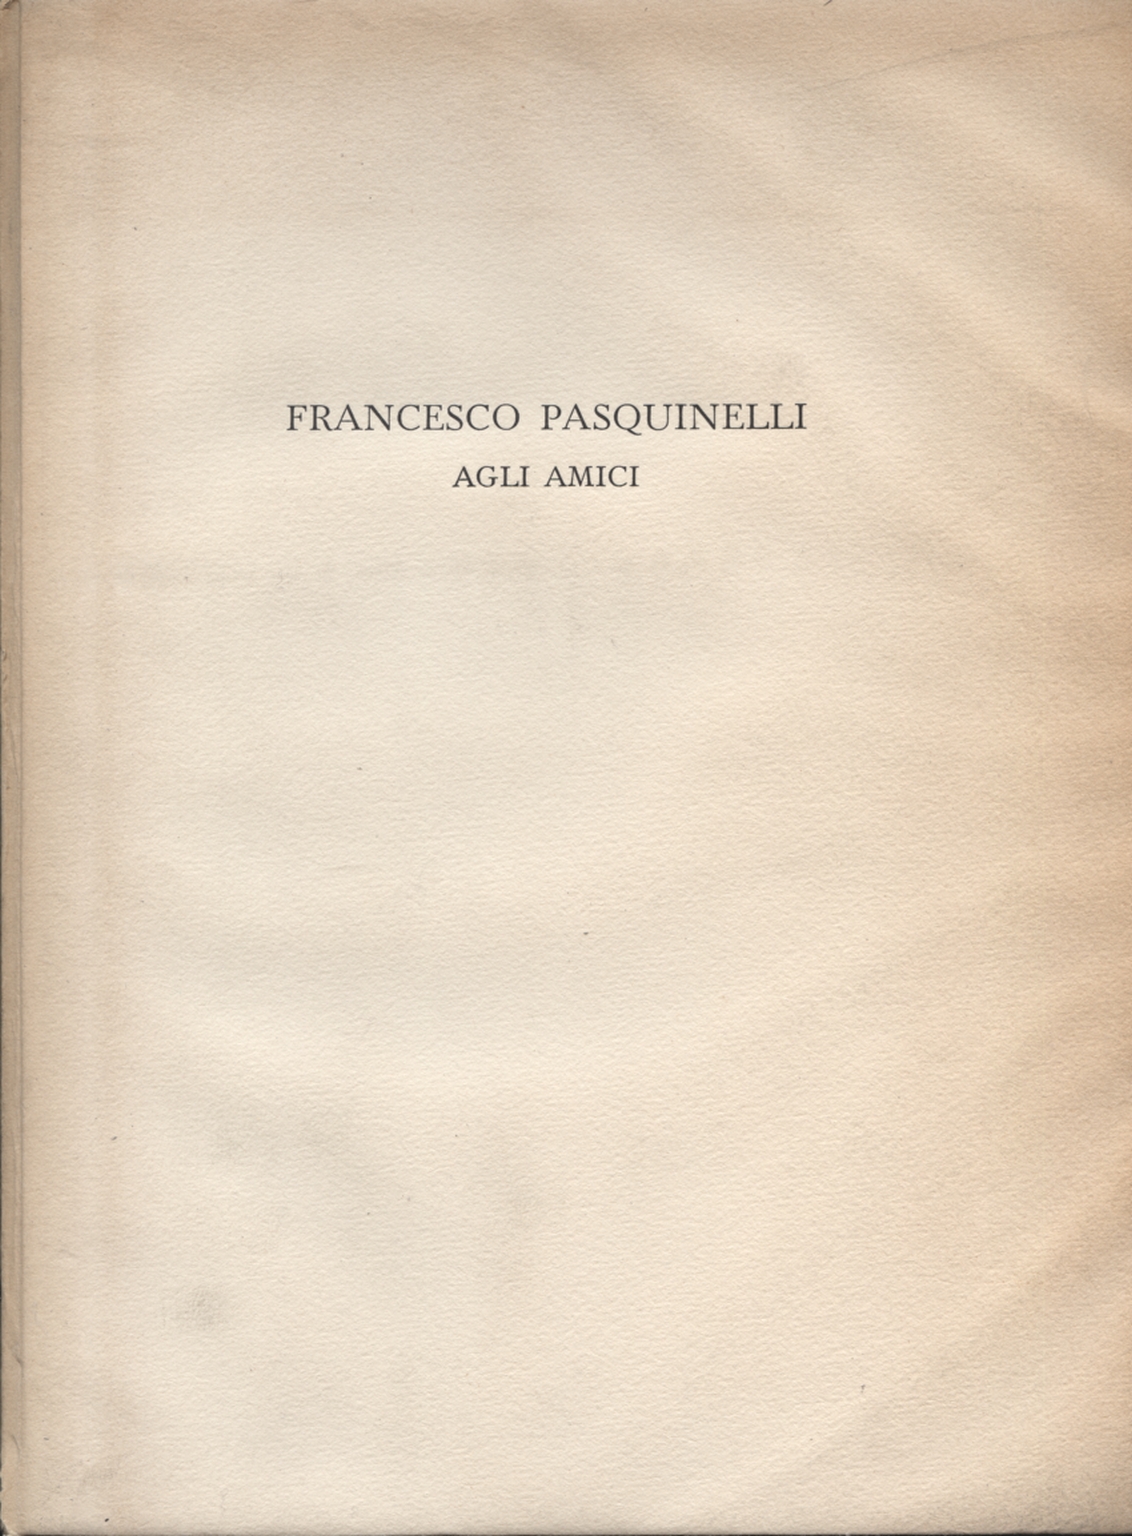 Francesco Pasquinelli amigos, Francesco Pasquinelli